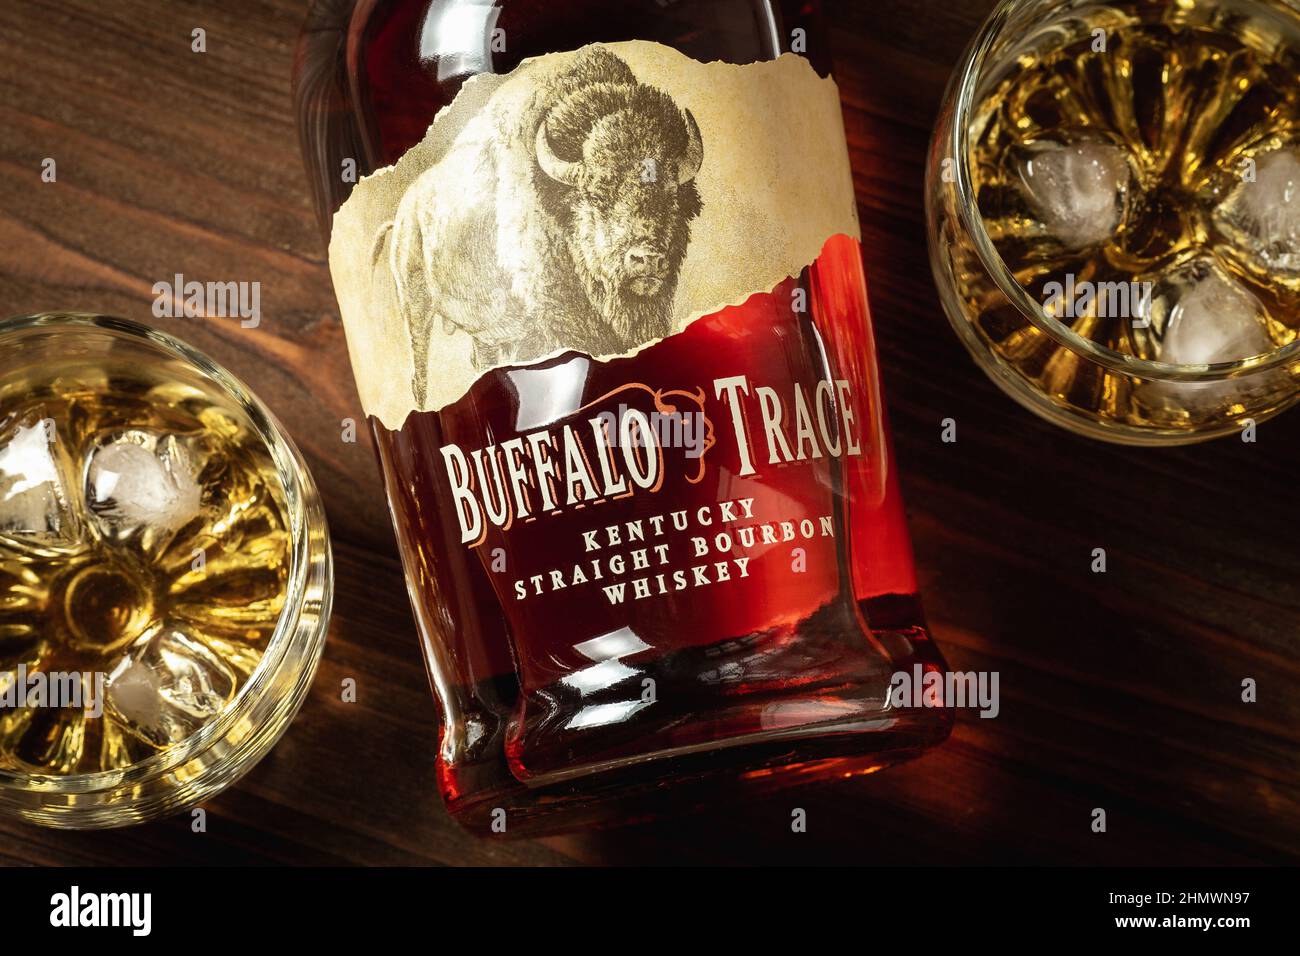 Ternopil, Ukraine - 29 avril 2021 : une bouteille de whisky Buffalo Trace Kentucky Straight Bourbon et deux verres avec glace et bourbon sur une table en bois Banque D'Images